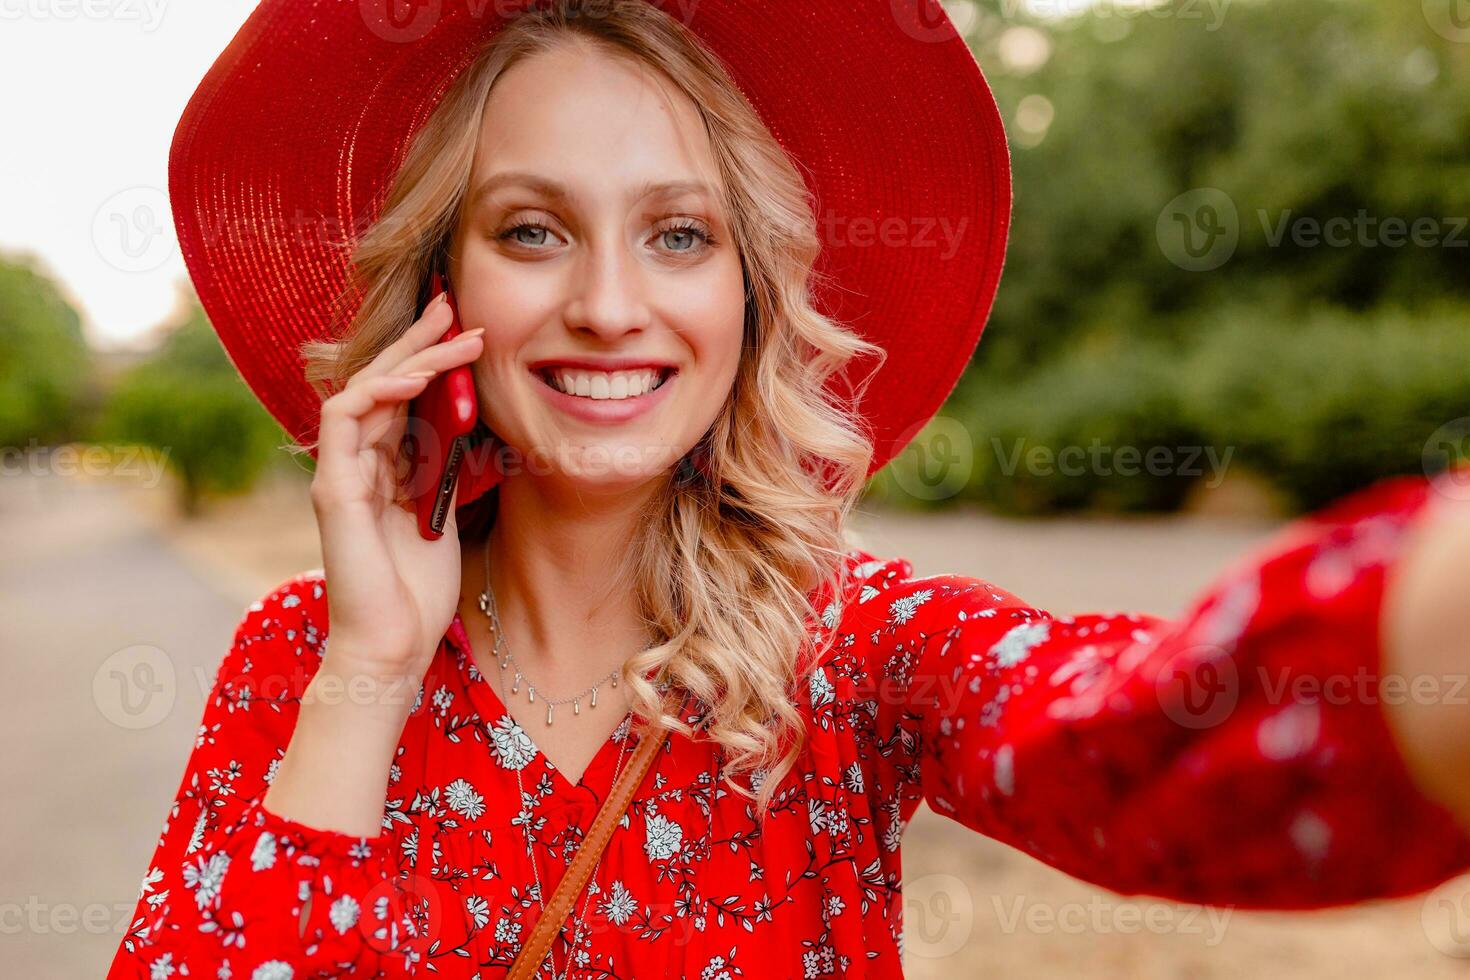 attraktiv stilvoll blond lächelnd Frau im Stroh rot Hut und Bluse Sommer- Mode foto